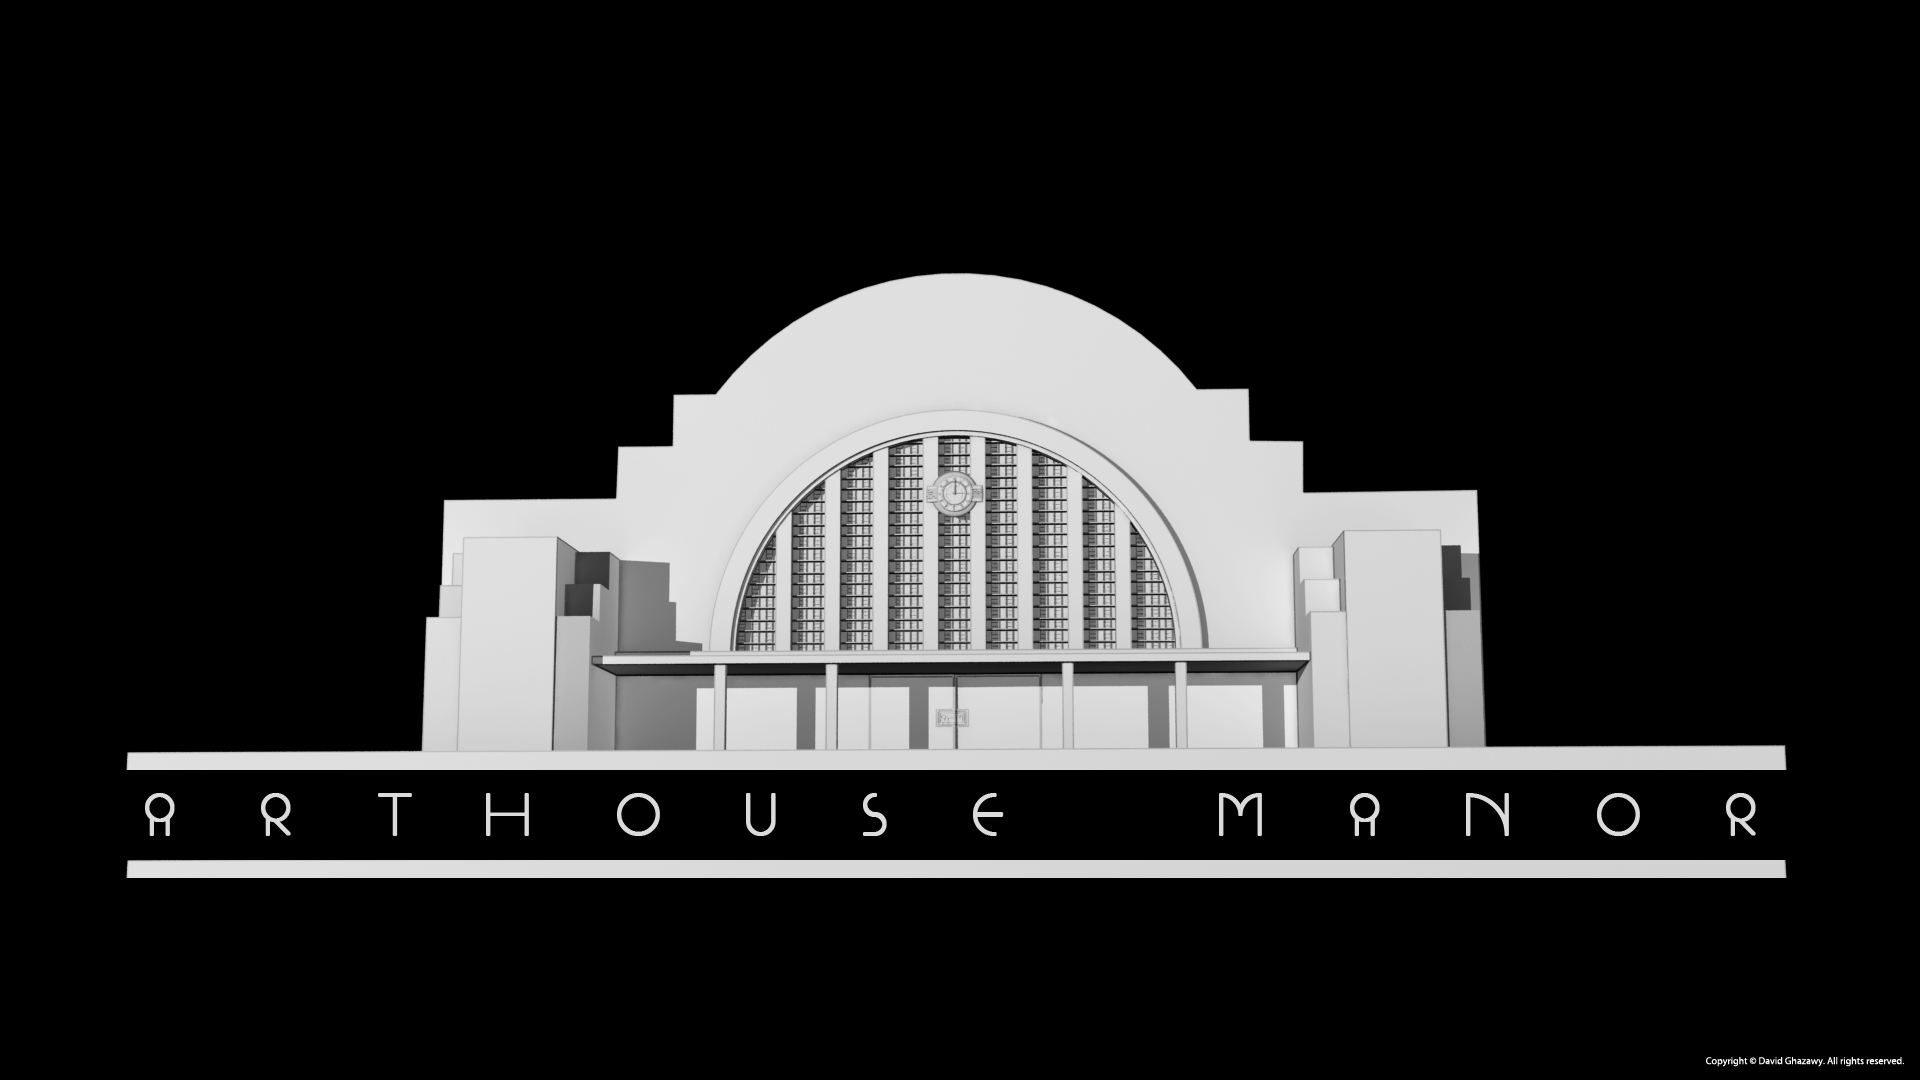 Logo: ArtHouse Manor